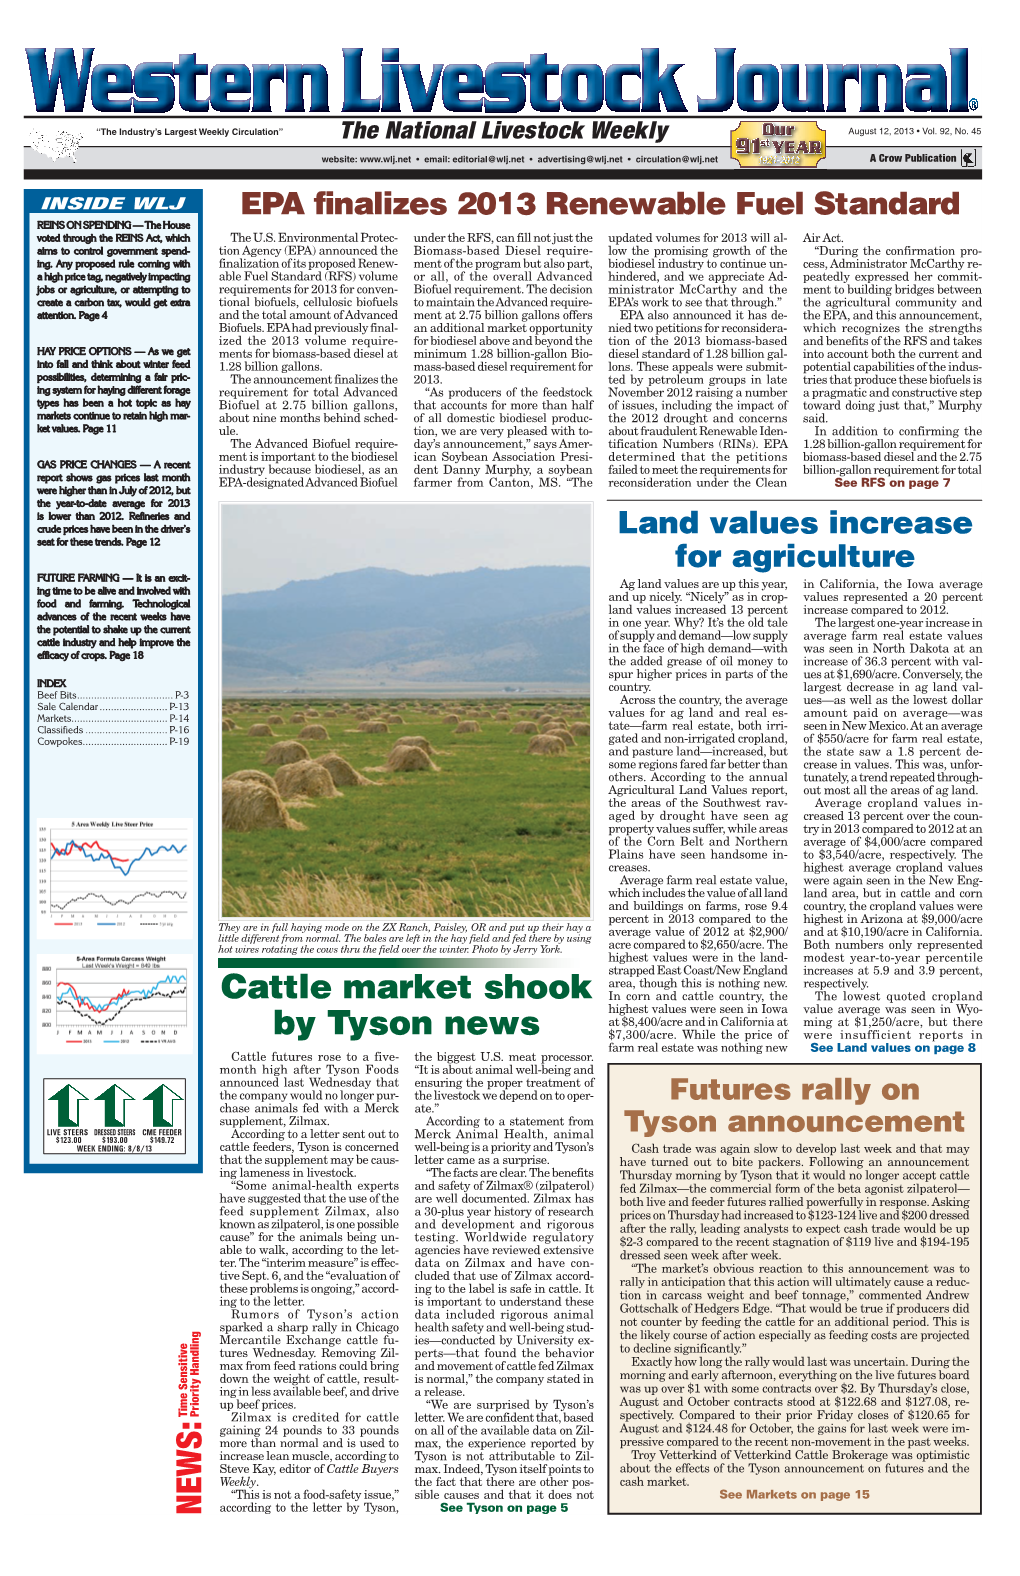 Cattle Market Shook by Tyson News